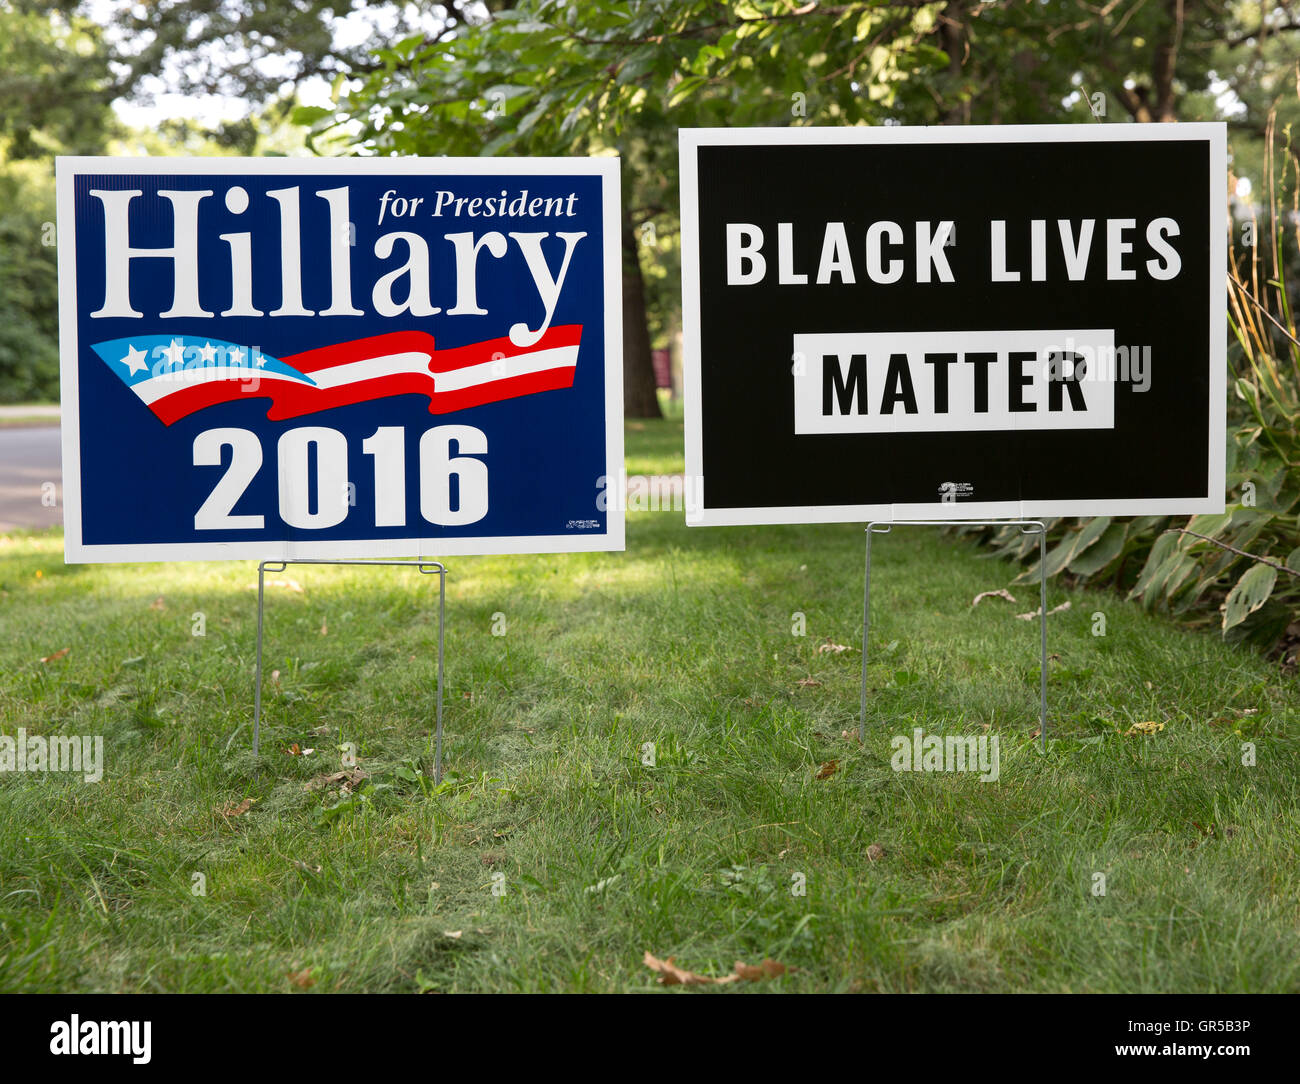 2016 Hillary Clinton per il presidente statunitense e nero vive questione cartelli da giardino Foto Stock